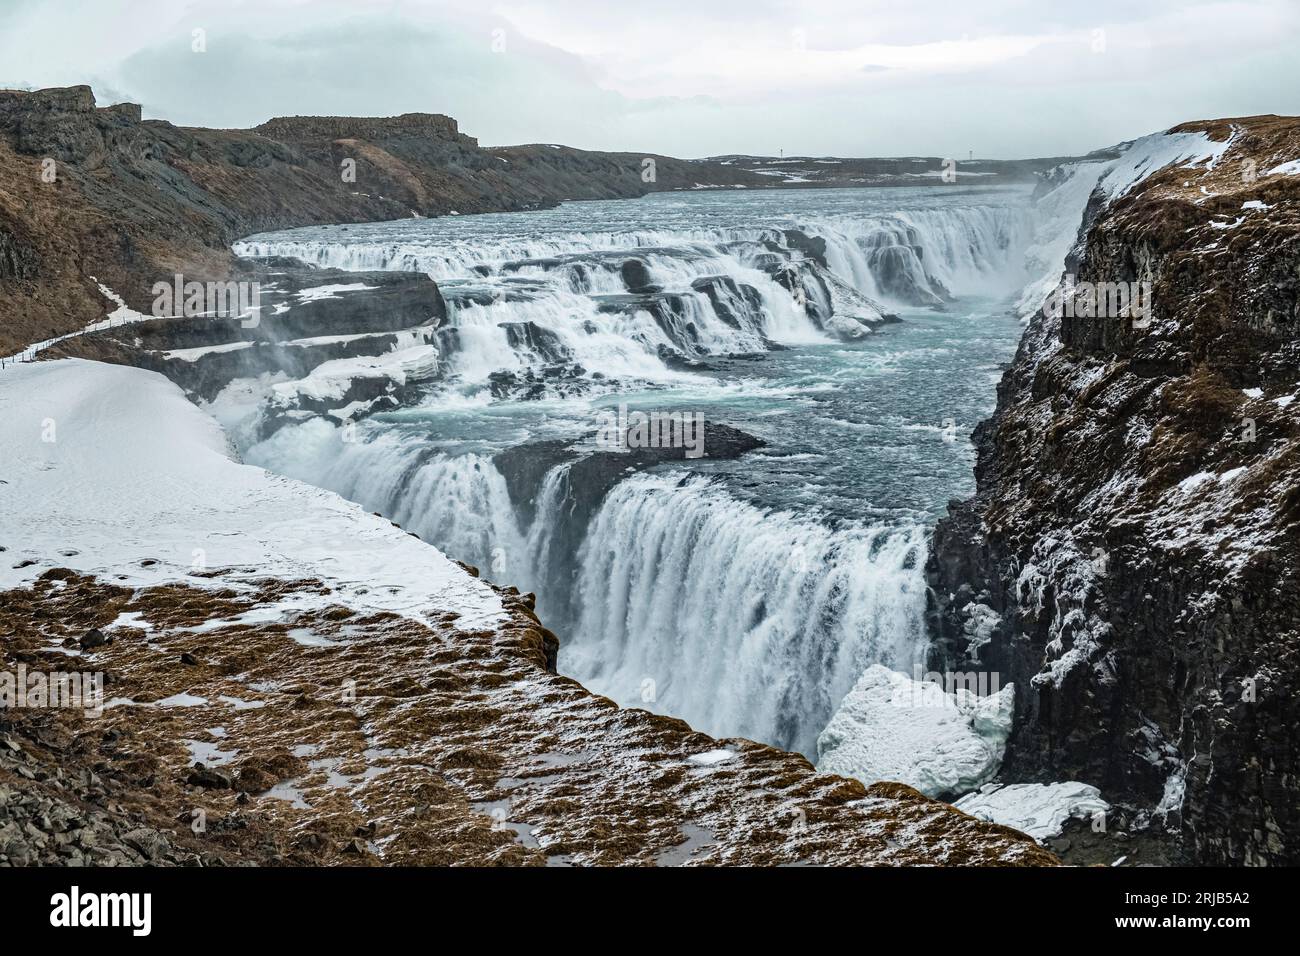 La rivière Hvítá qui coule sur la cascade Gullfoss à la fin de l'hiver (mars), dans le sud-ouest de l'Islande Banque D'Images